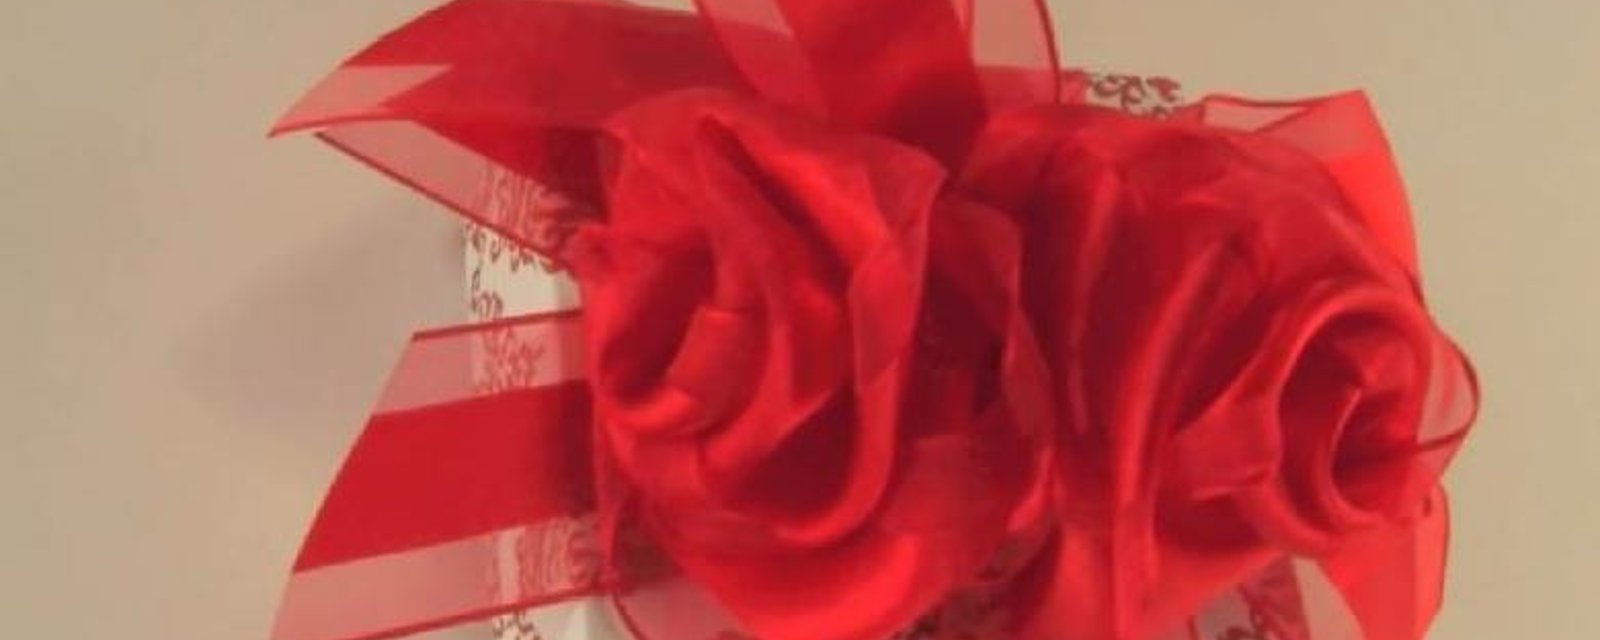 Avec un ruban, découvrez comment faire un chou décoratif en forme de rose (tutoriel)